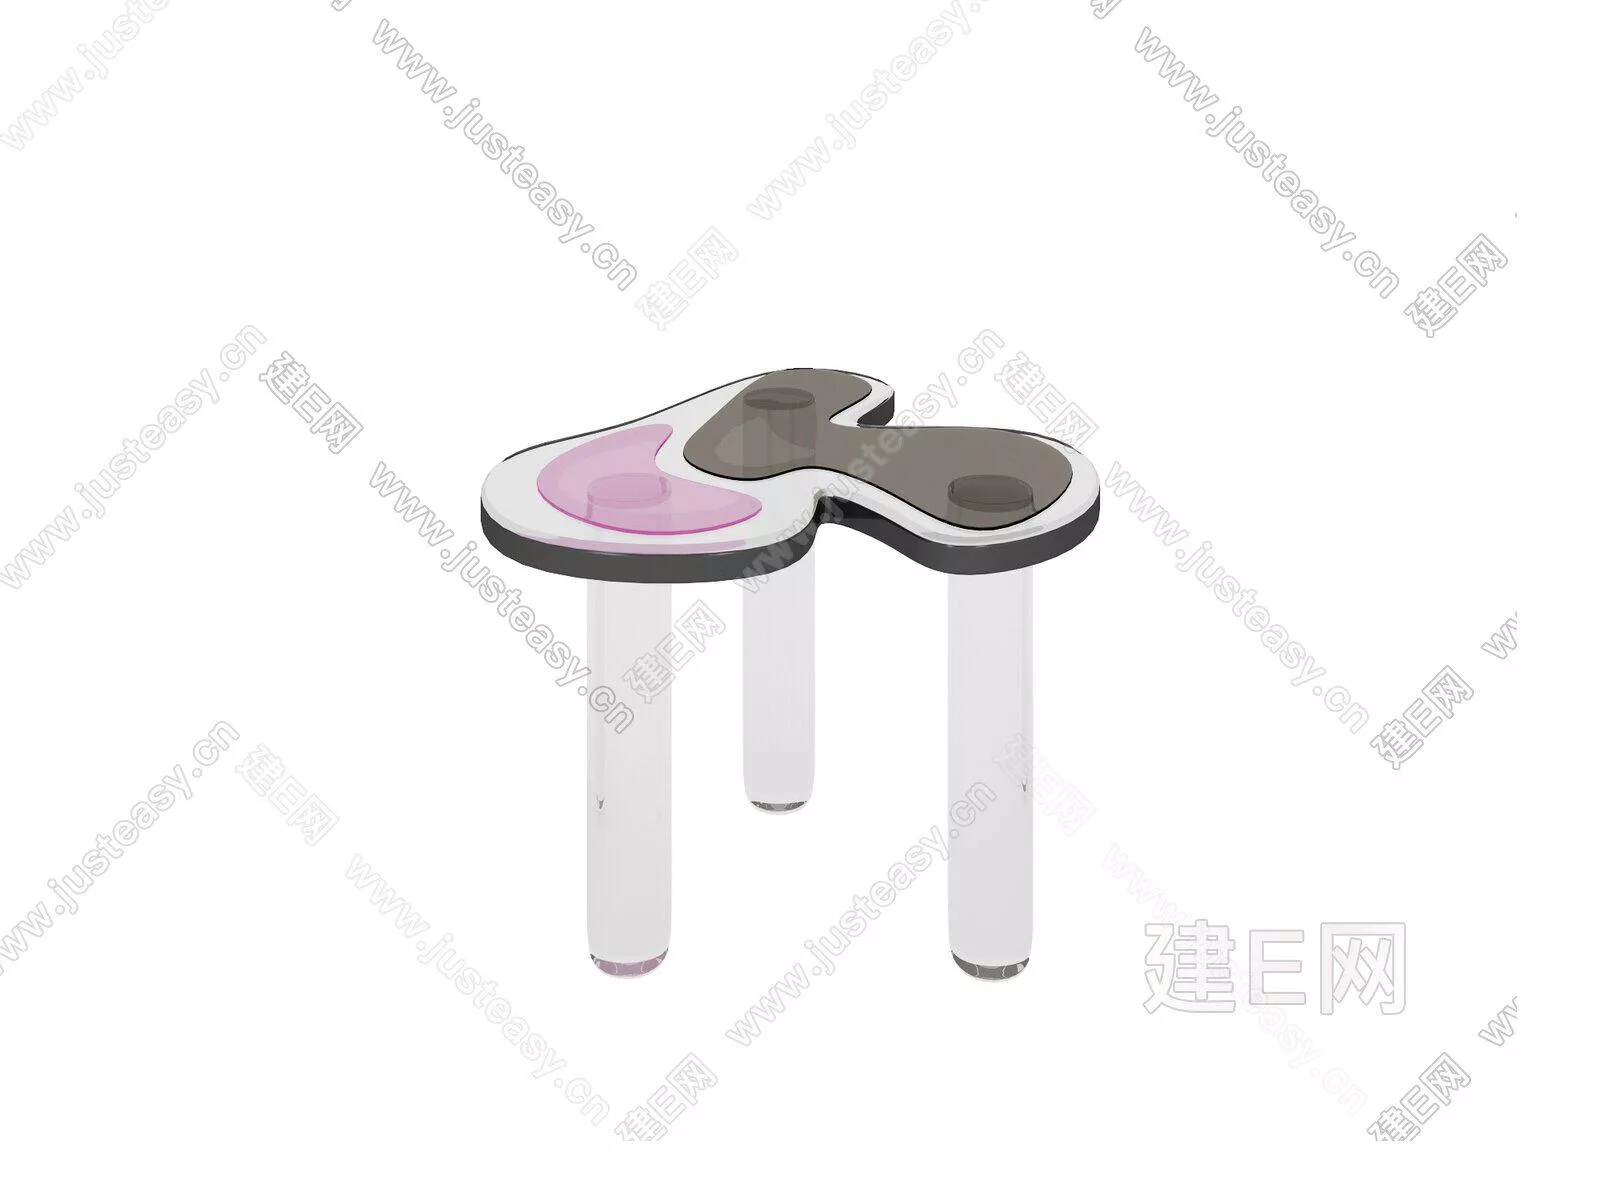 NORDIC SIDE TABLE - SKETCHUP 3D MODEL - ENSCAPE - 104941802